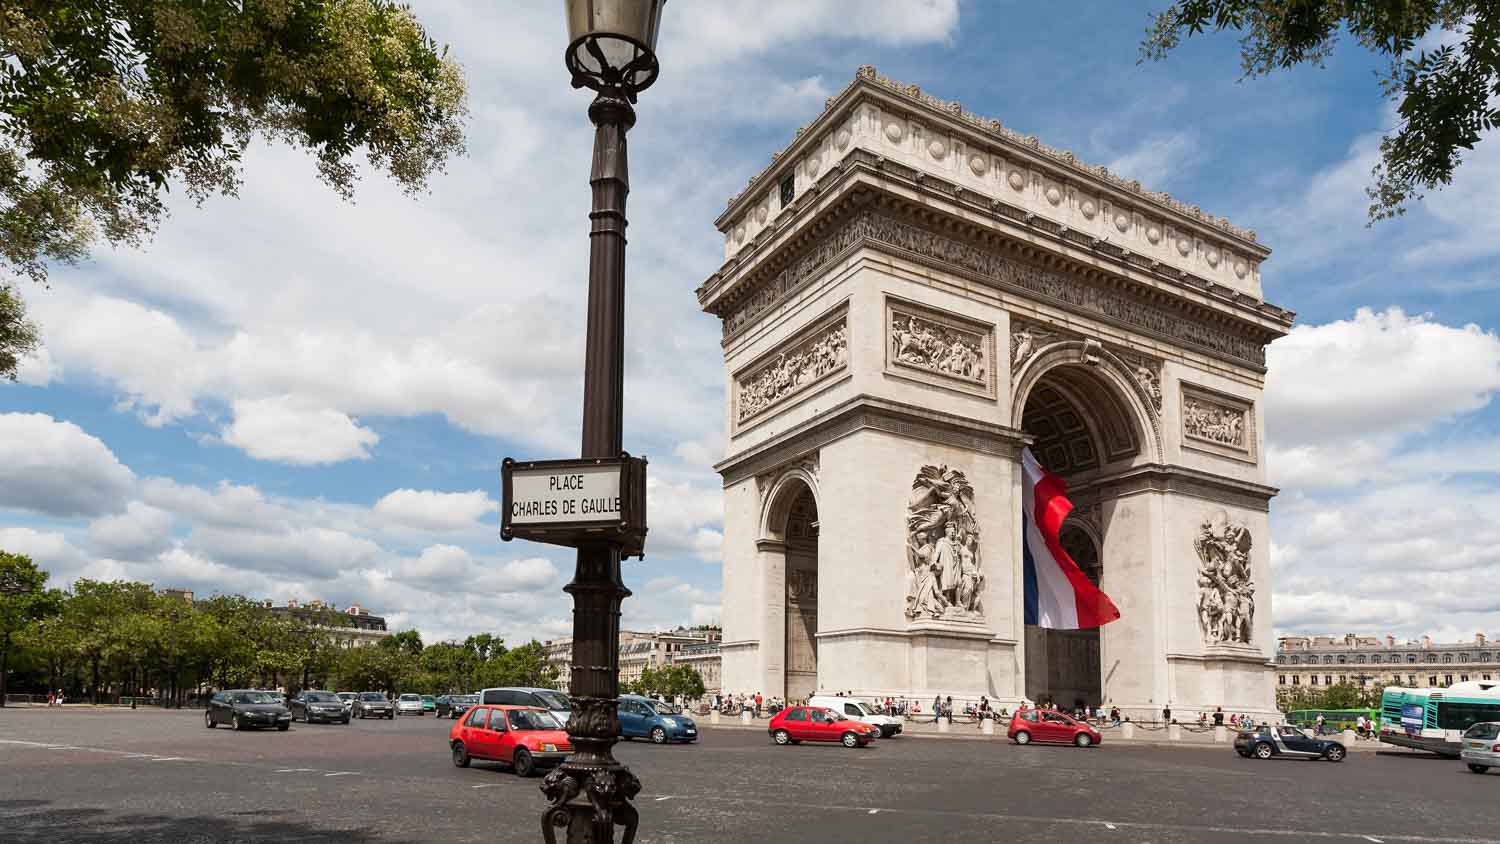 Arc De Triomphe Backgrounds, Compatible - PC, Mobile, Gadgets| 1500x844 px